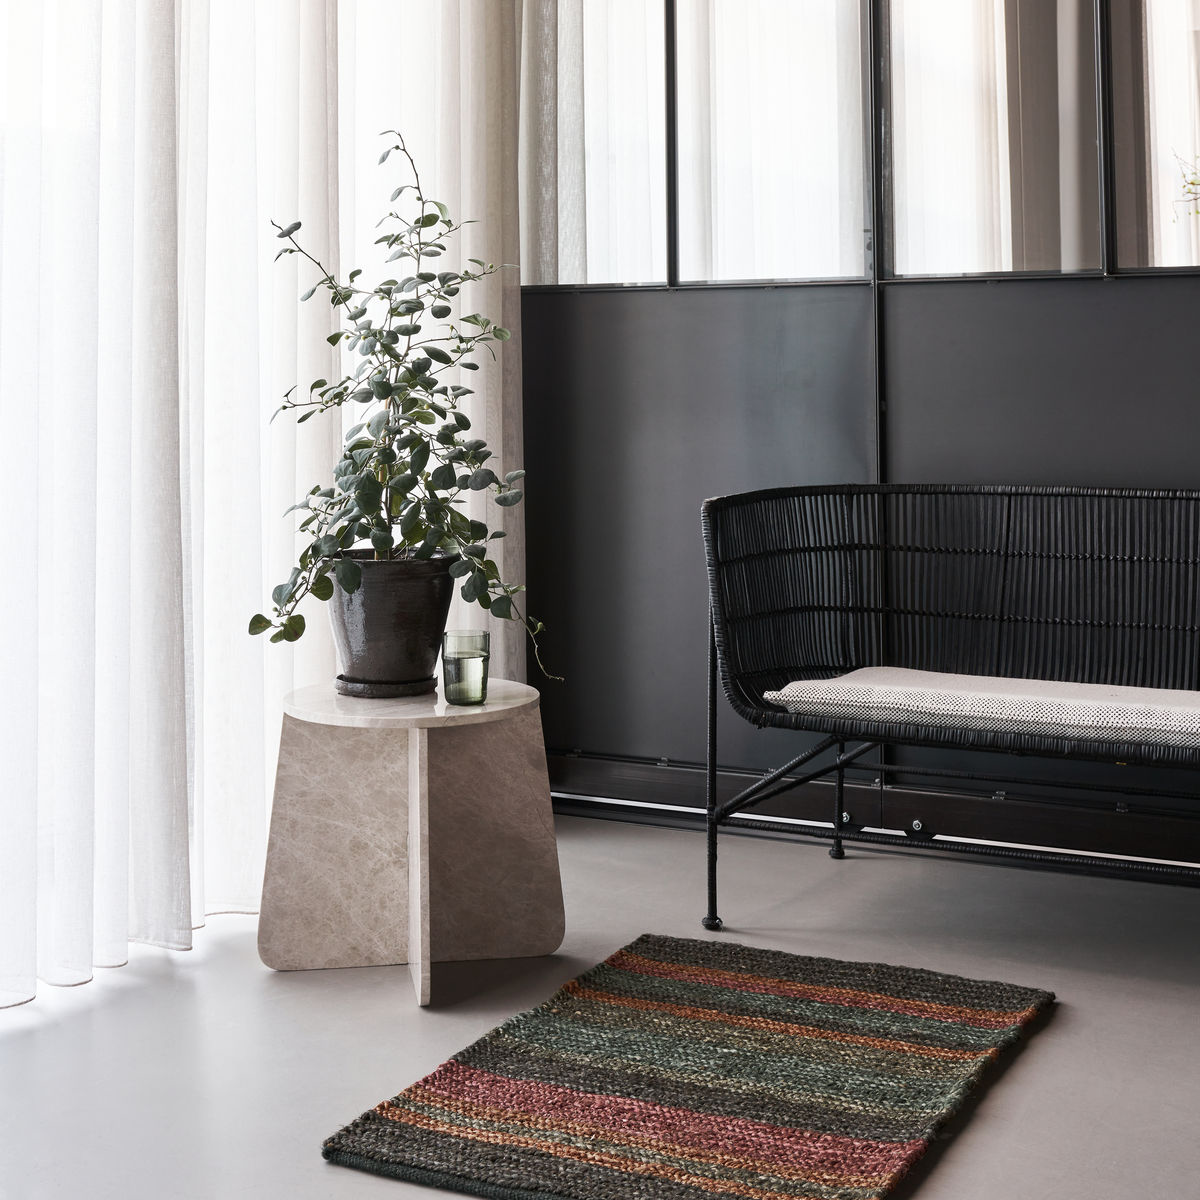 Teppich, Tori in Bunt präsentiert im Onlineshop von KAQTU Design AG. Teppich ist von House Doctor